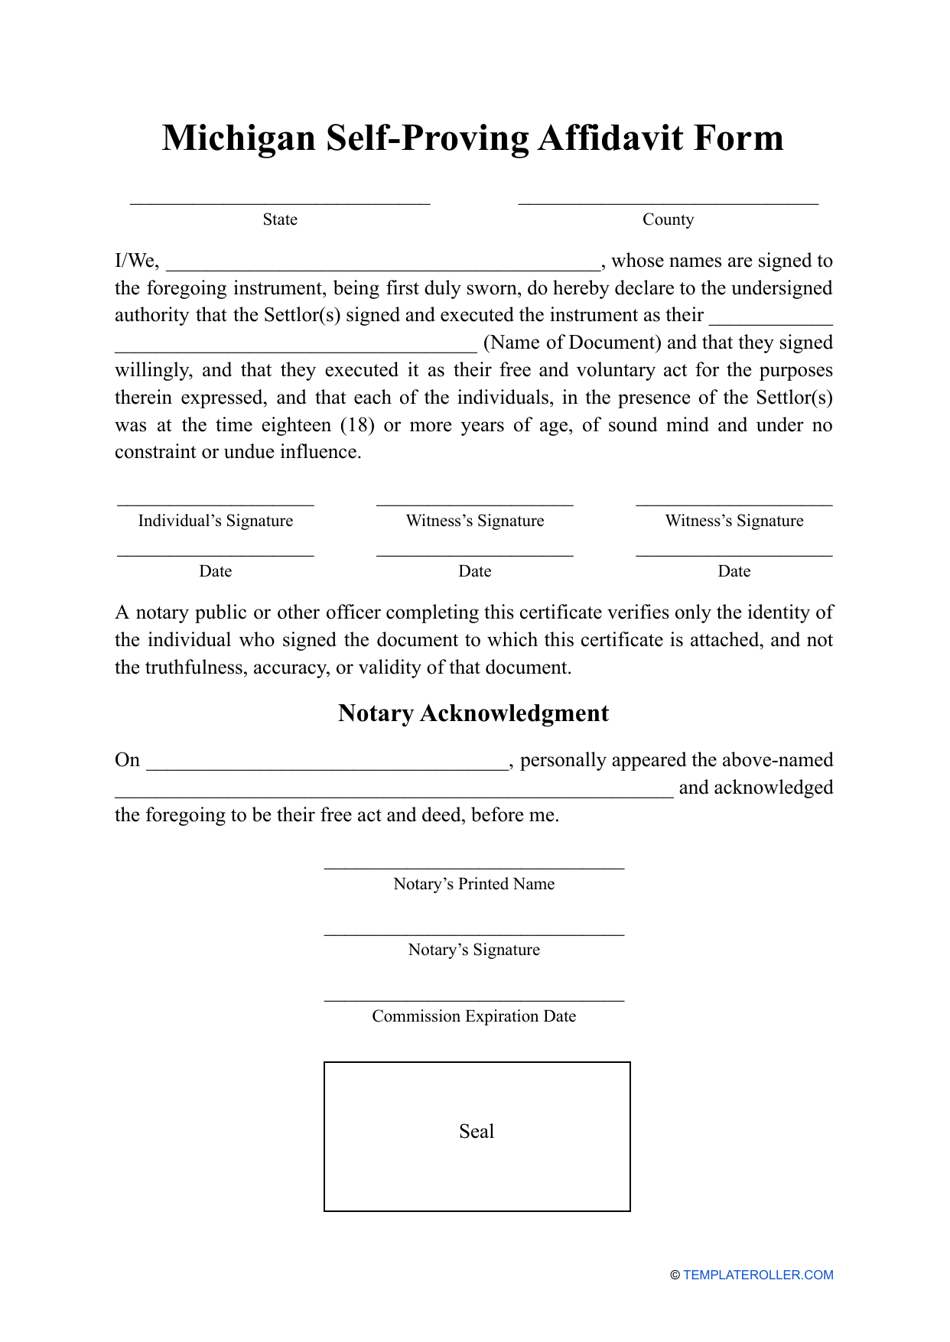 Self-proving Affidavit Form - Michigan, Page 1